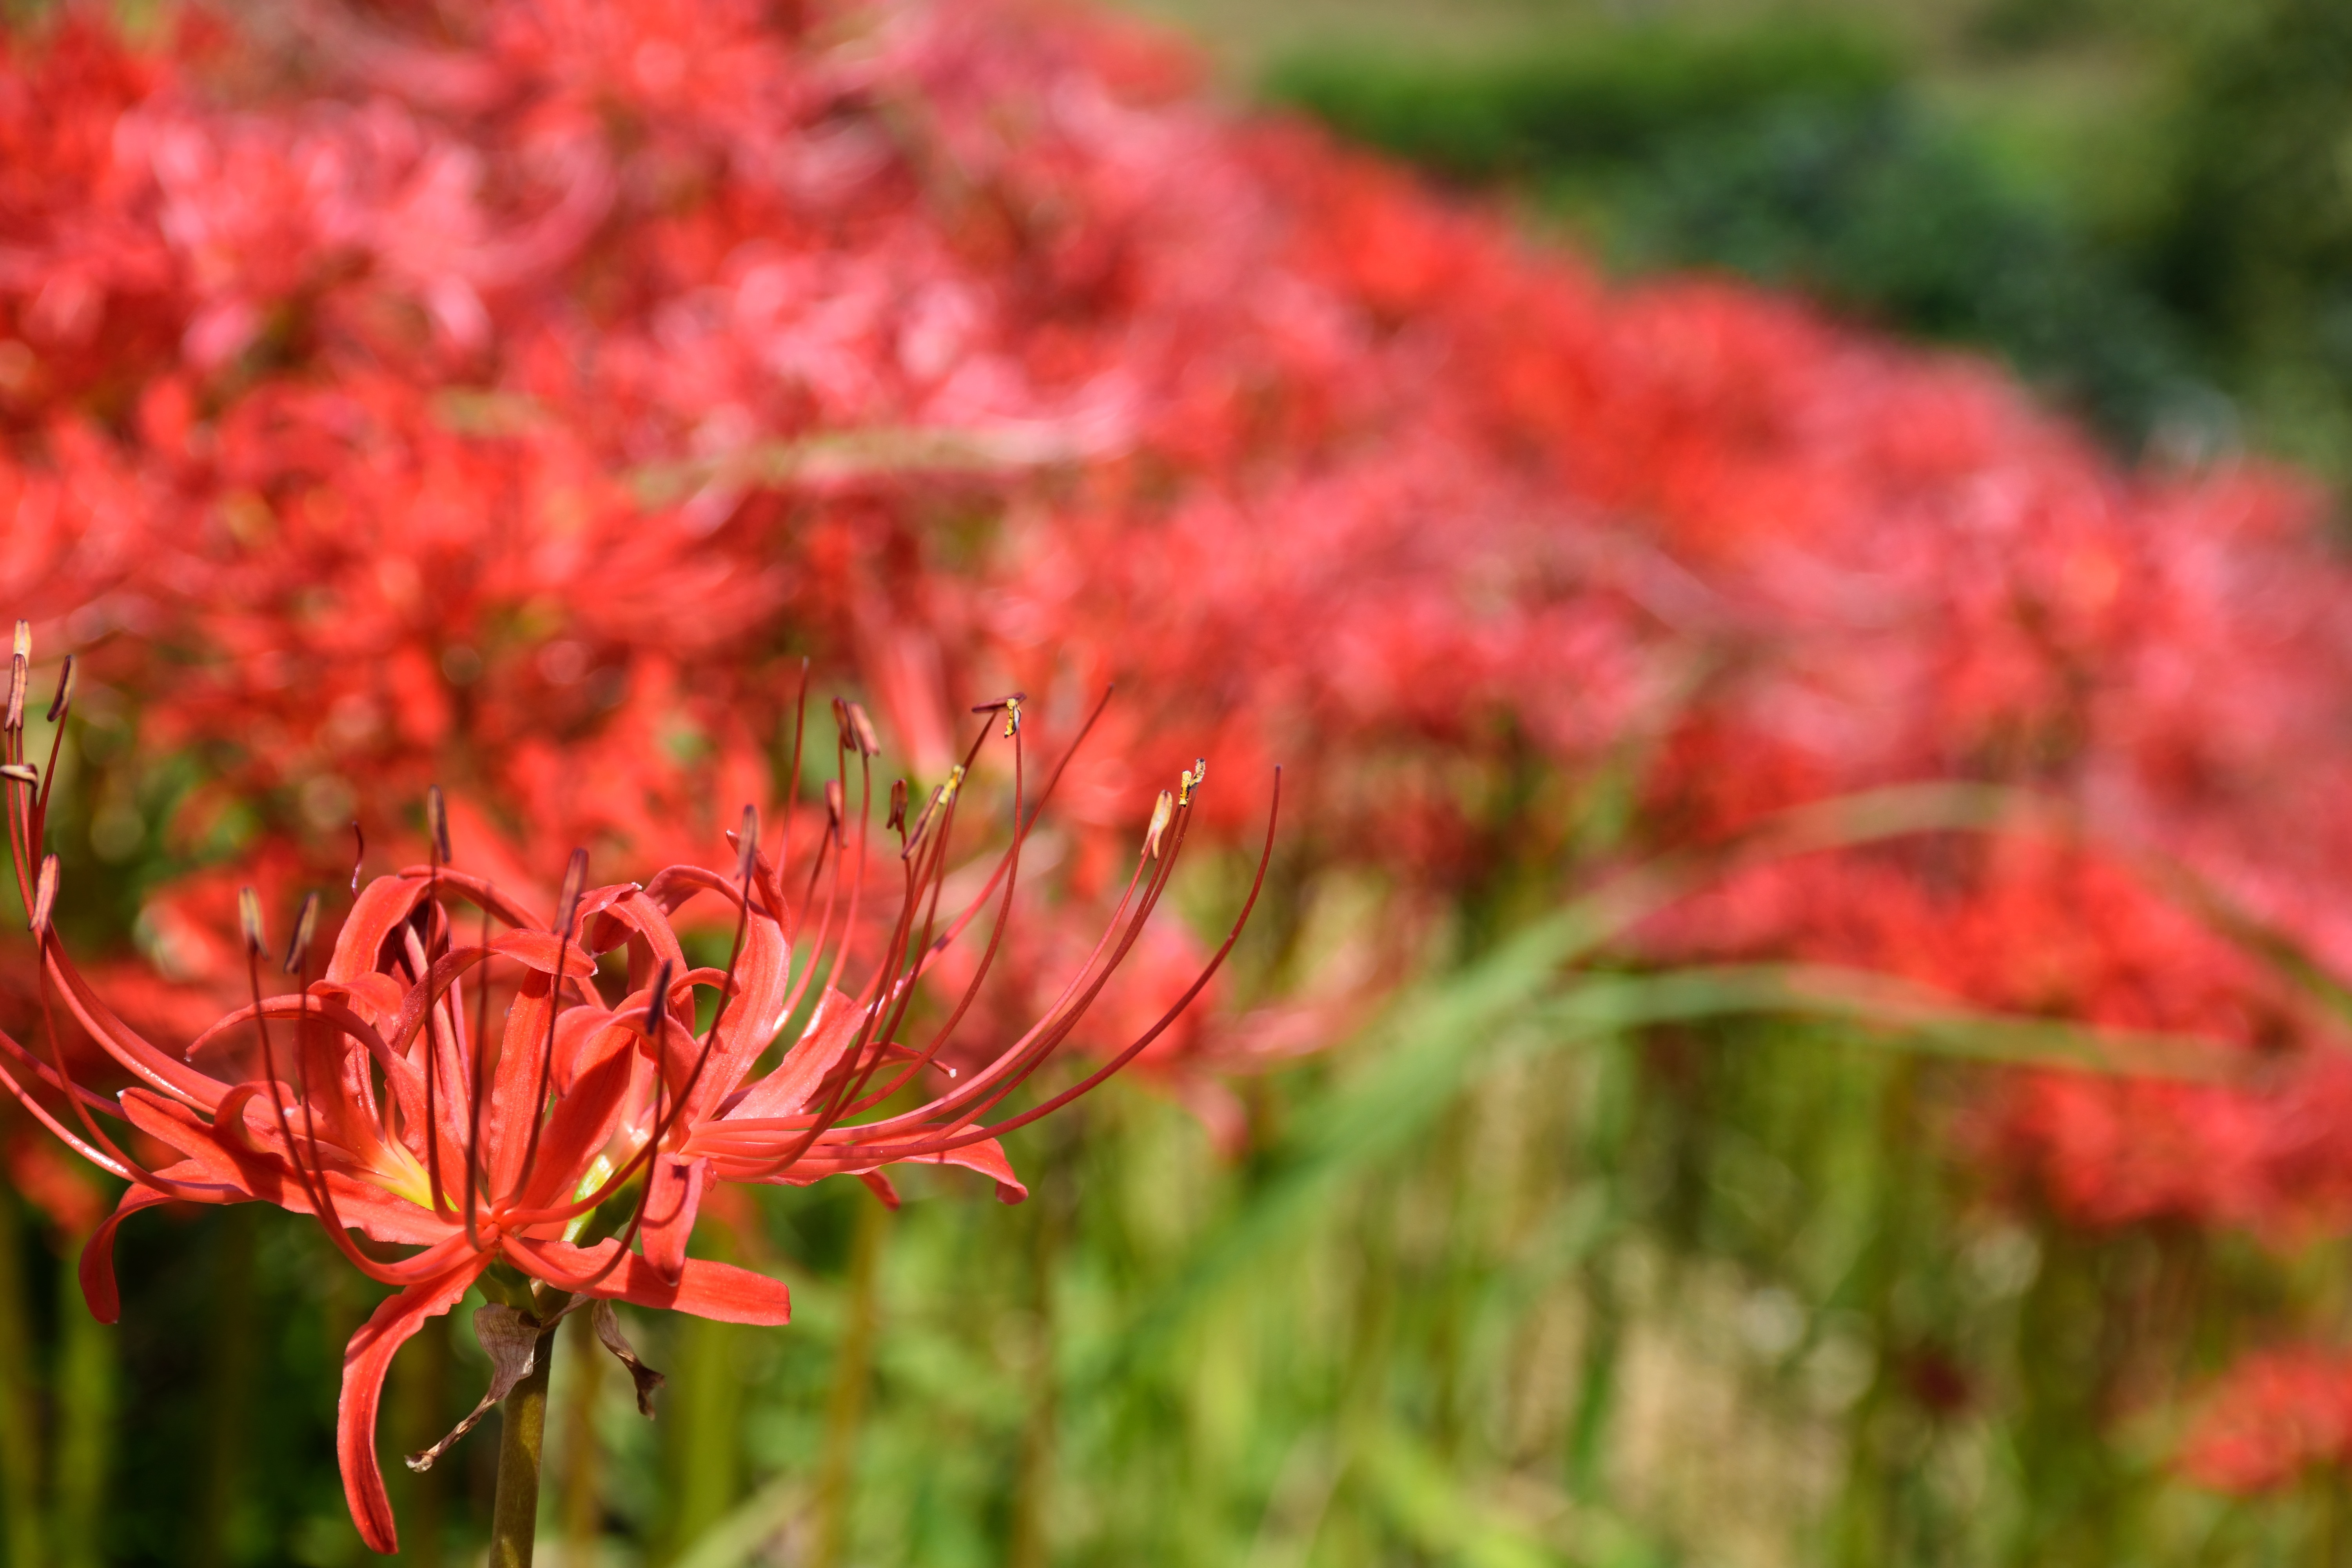 red multi petaled flower